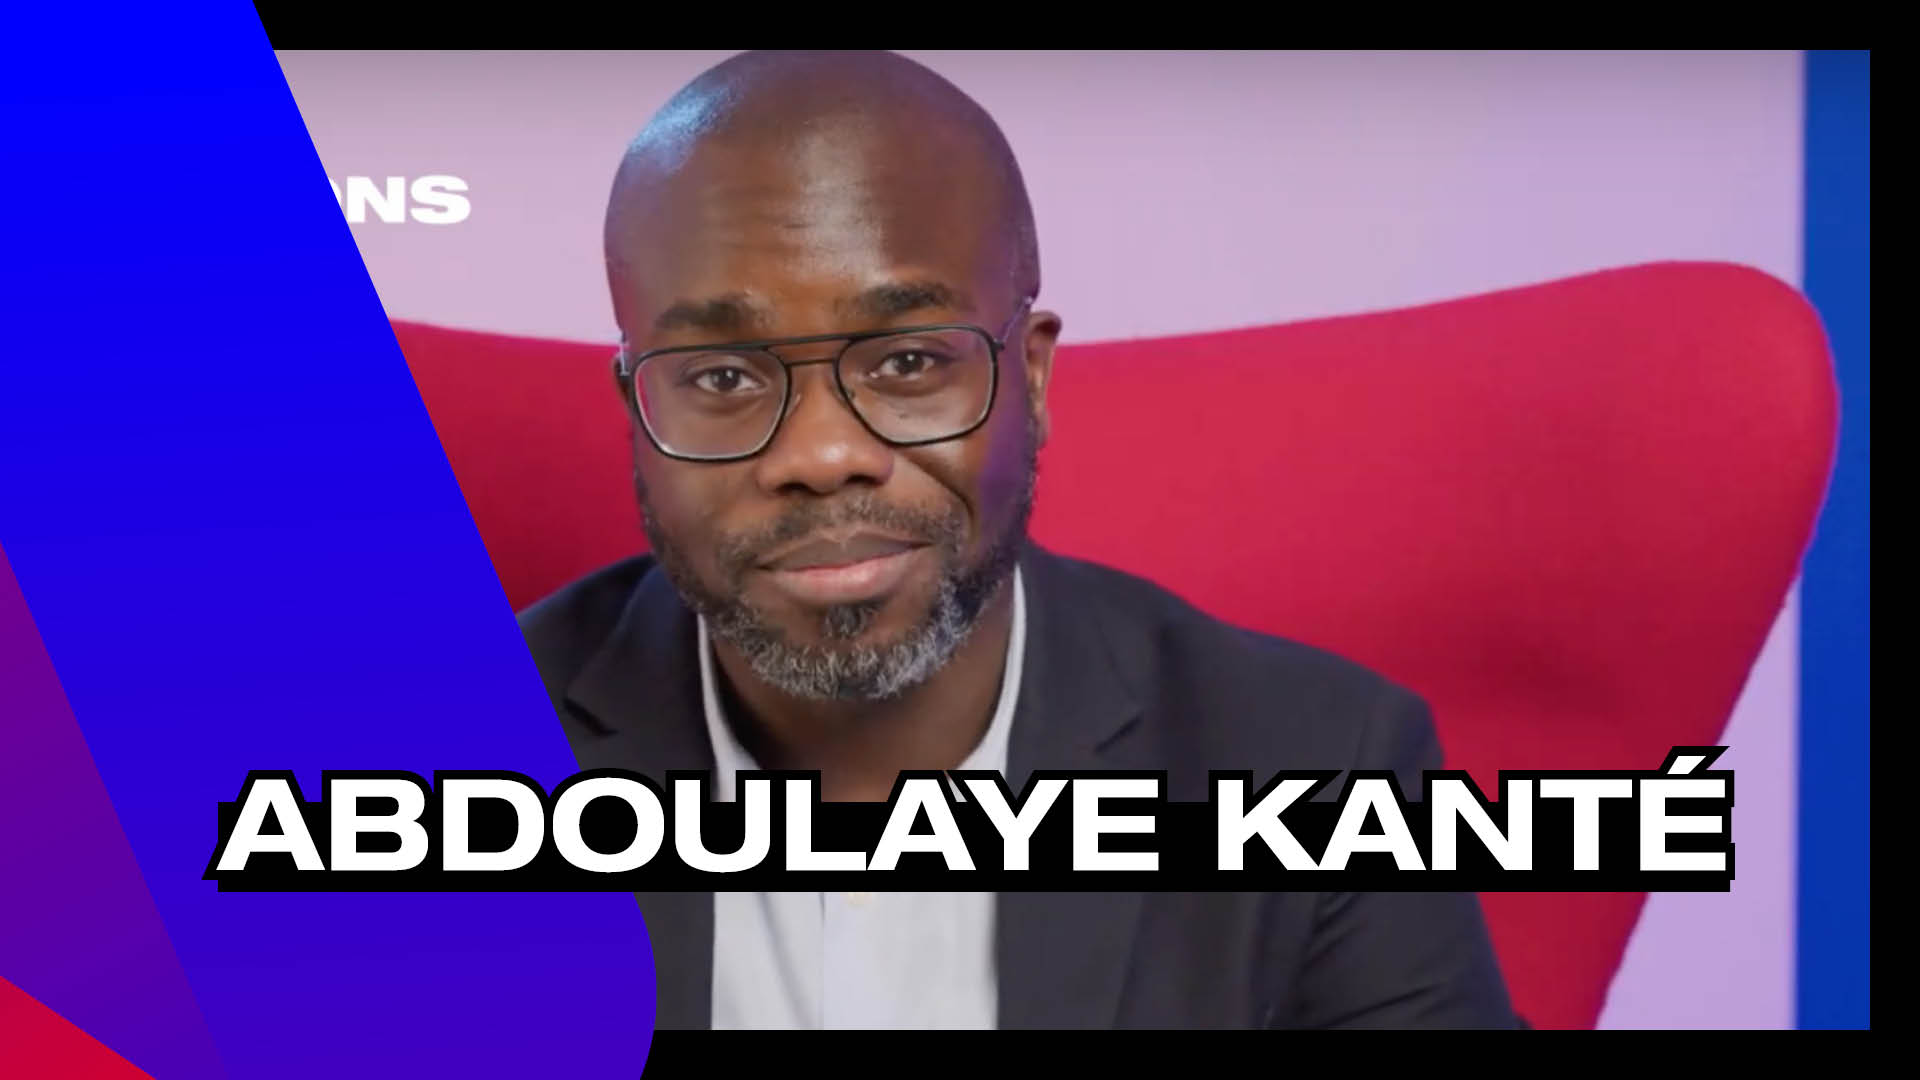 Abdoulaye Kanté